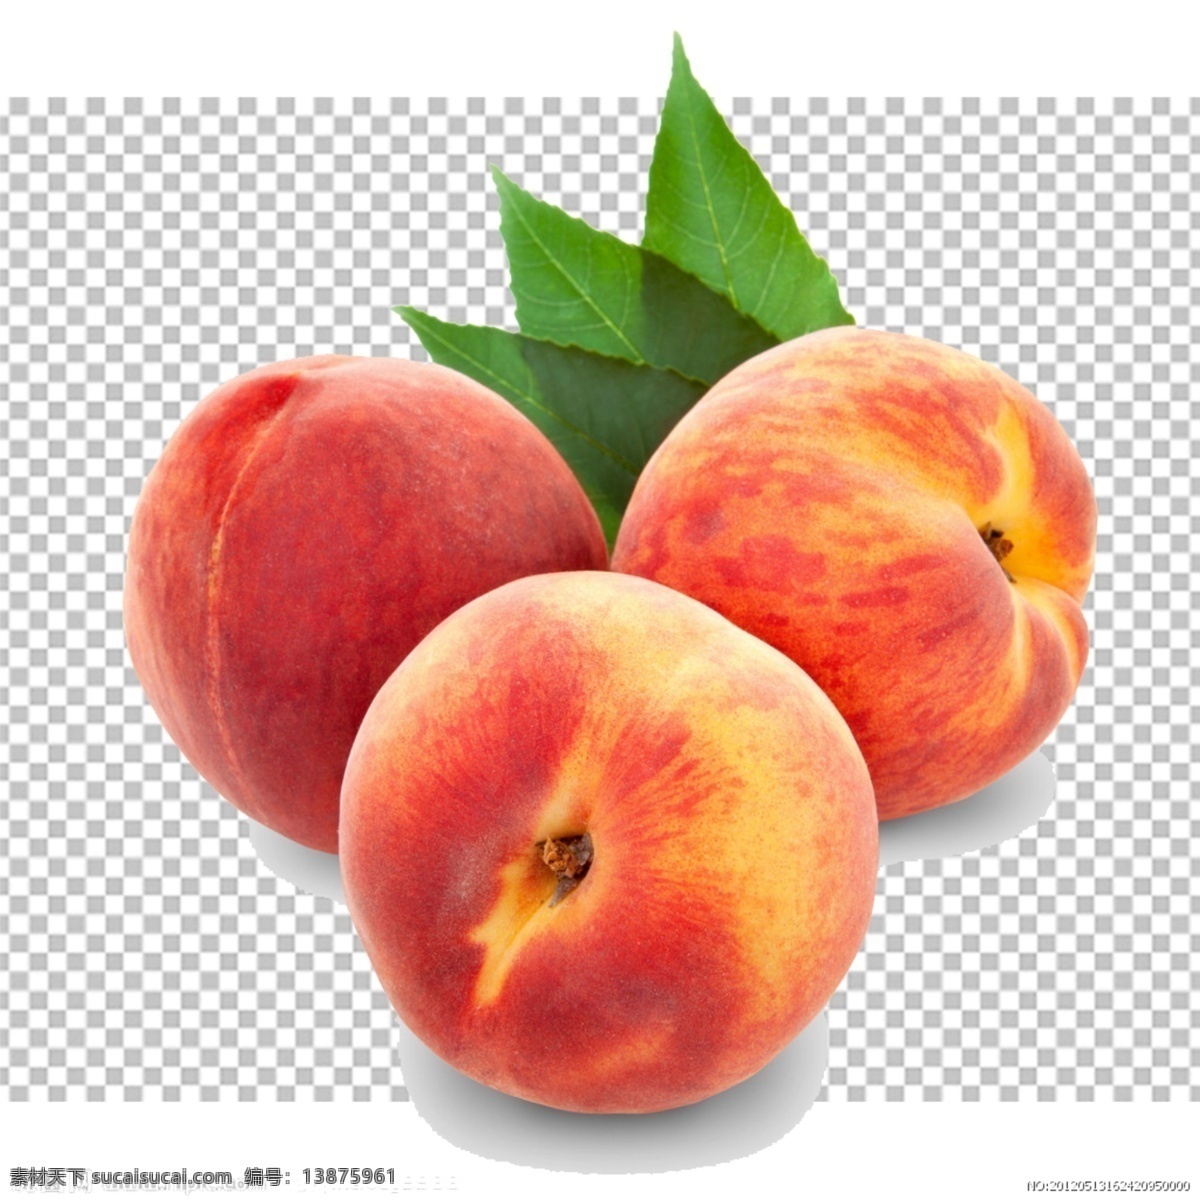 桃子图片 桃子 水果特写 水果写真 透明底水果 免抠图 水果 分层图 通道 分层 新鲜 特写 透明背景 透明底 抠图 png图 生物世界 水果透明底